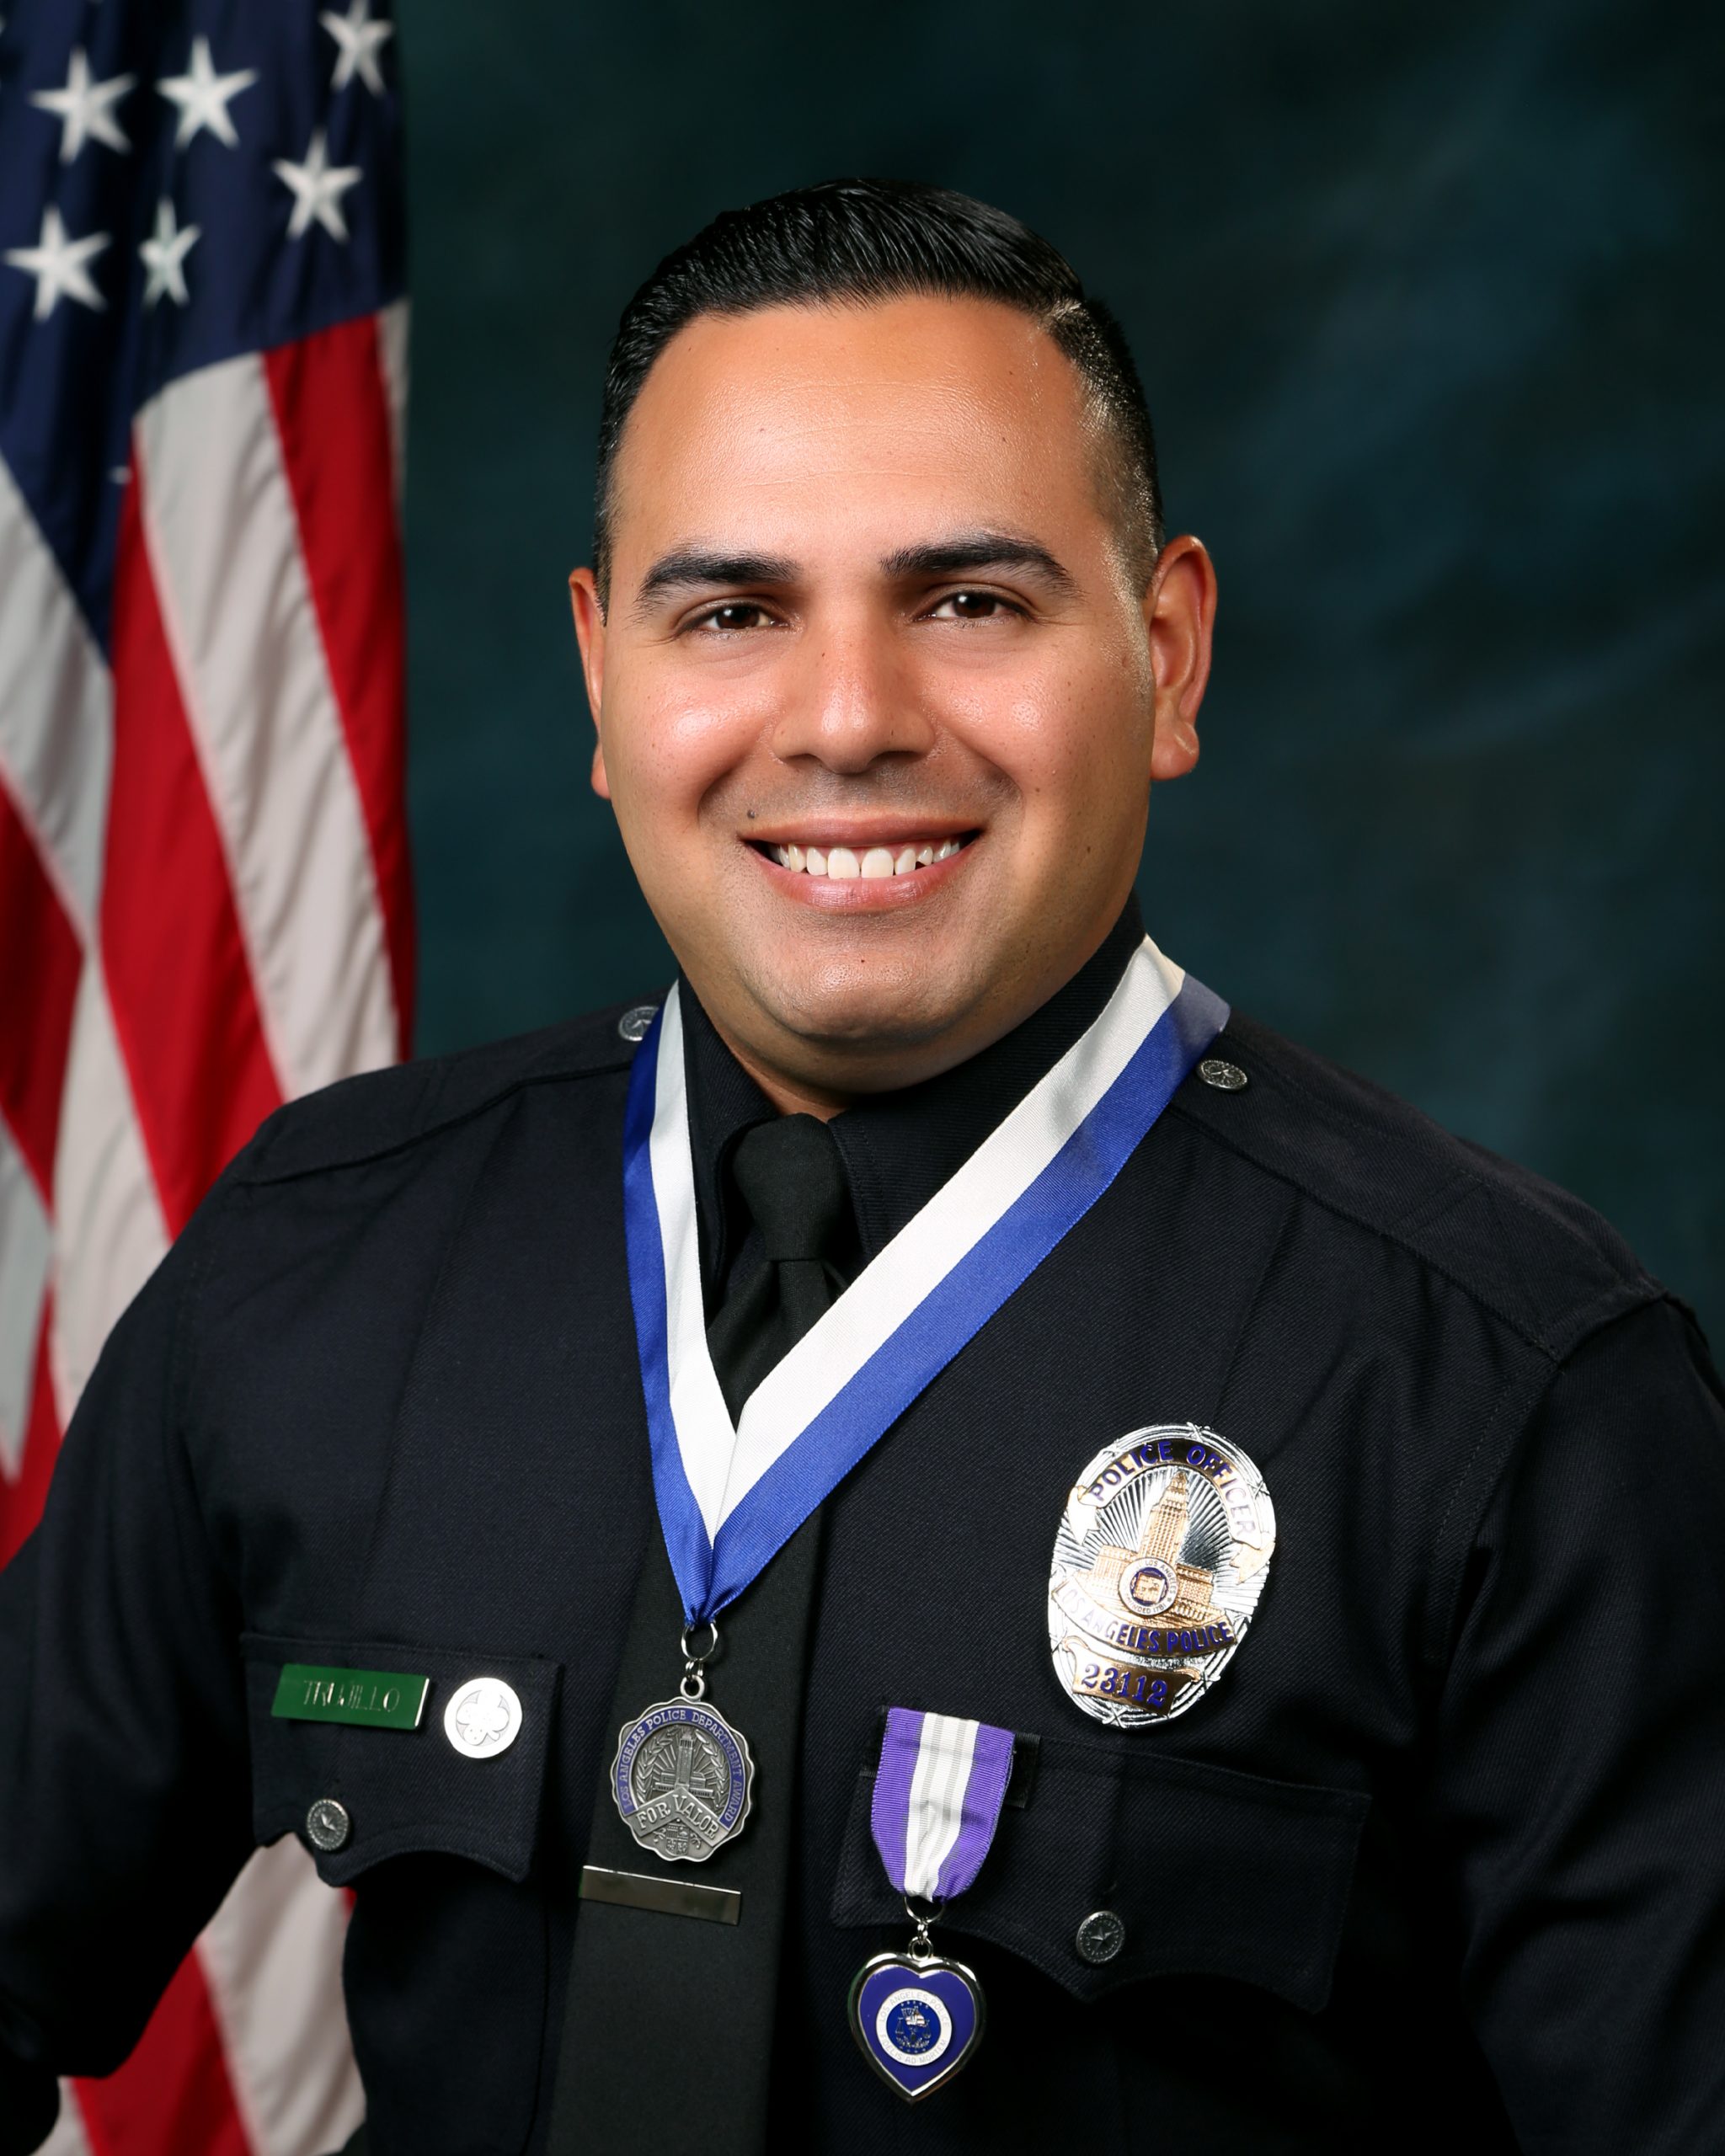 Officer Enrique Trujillo